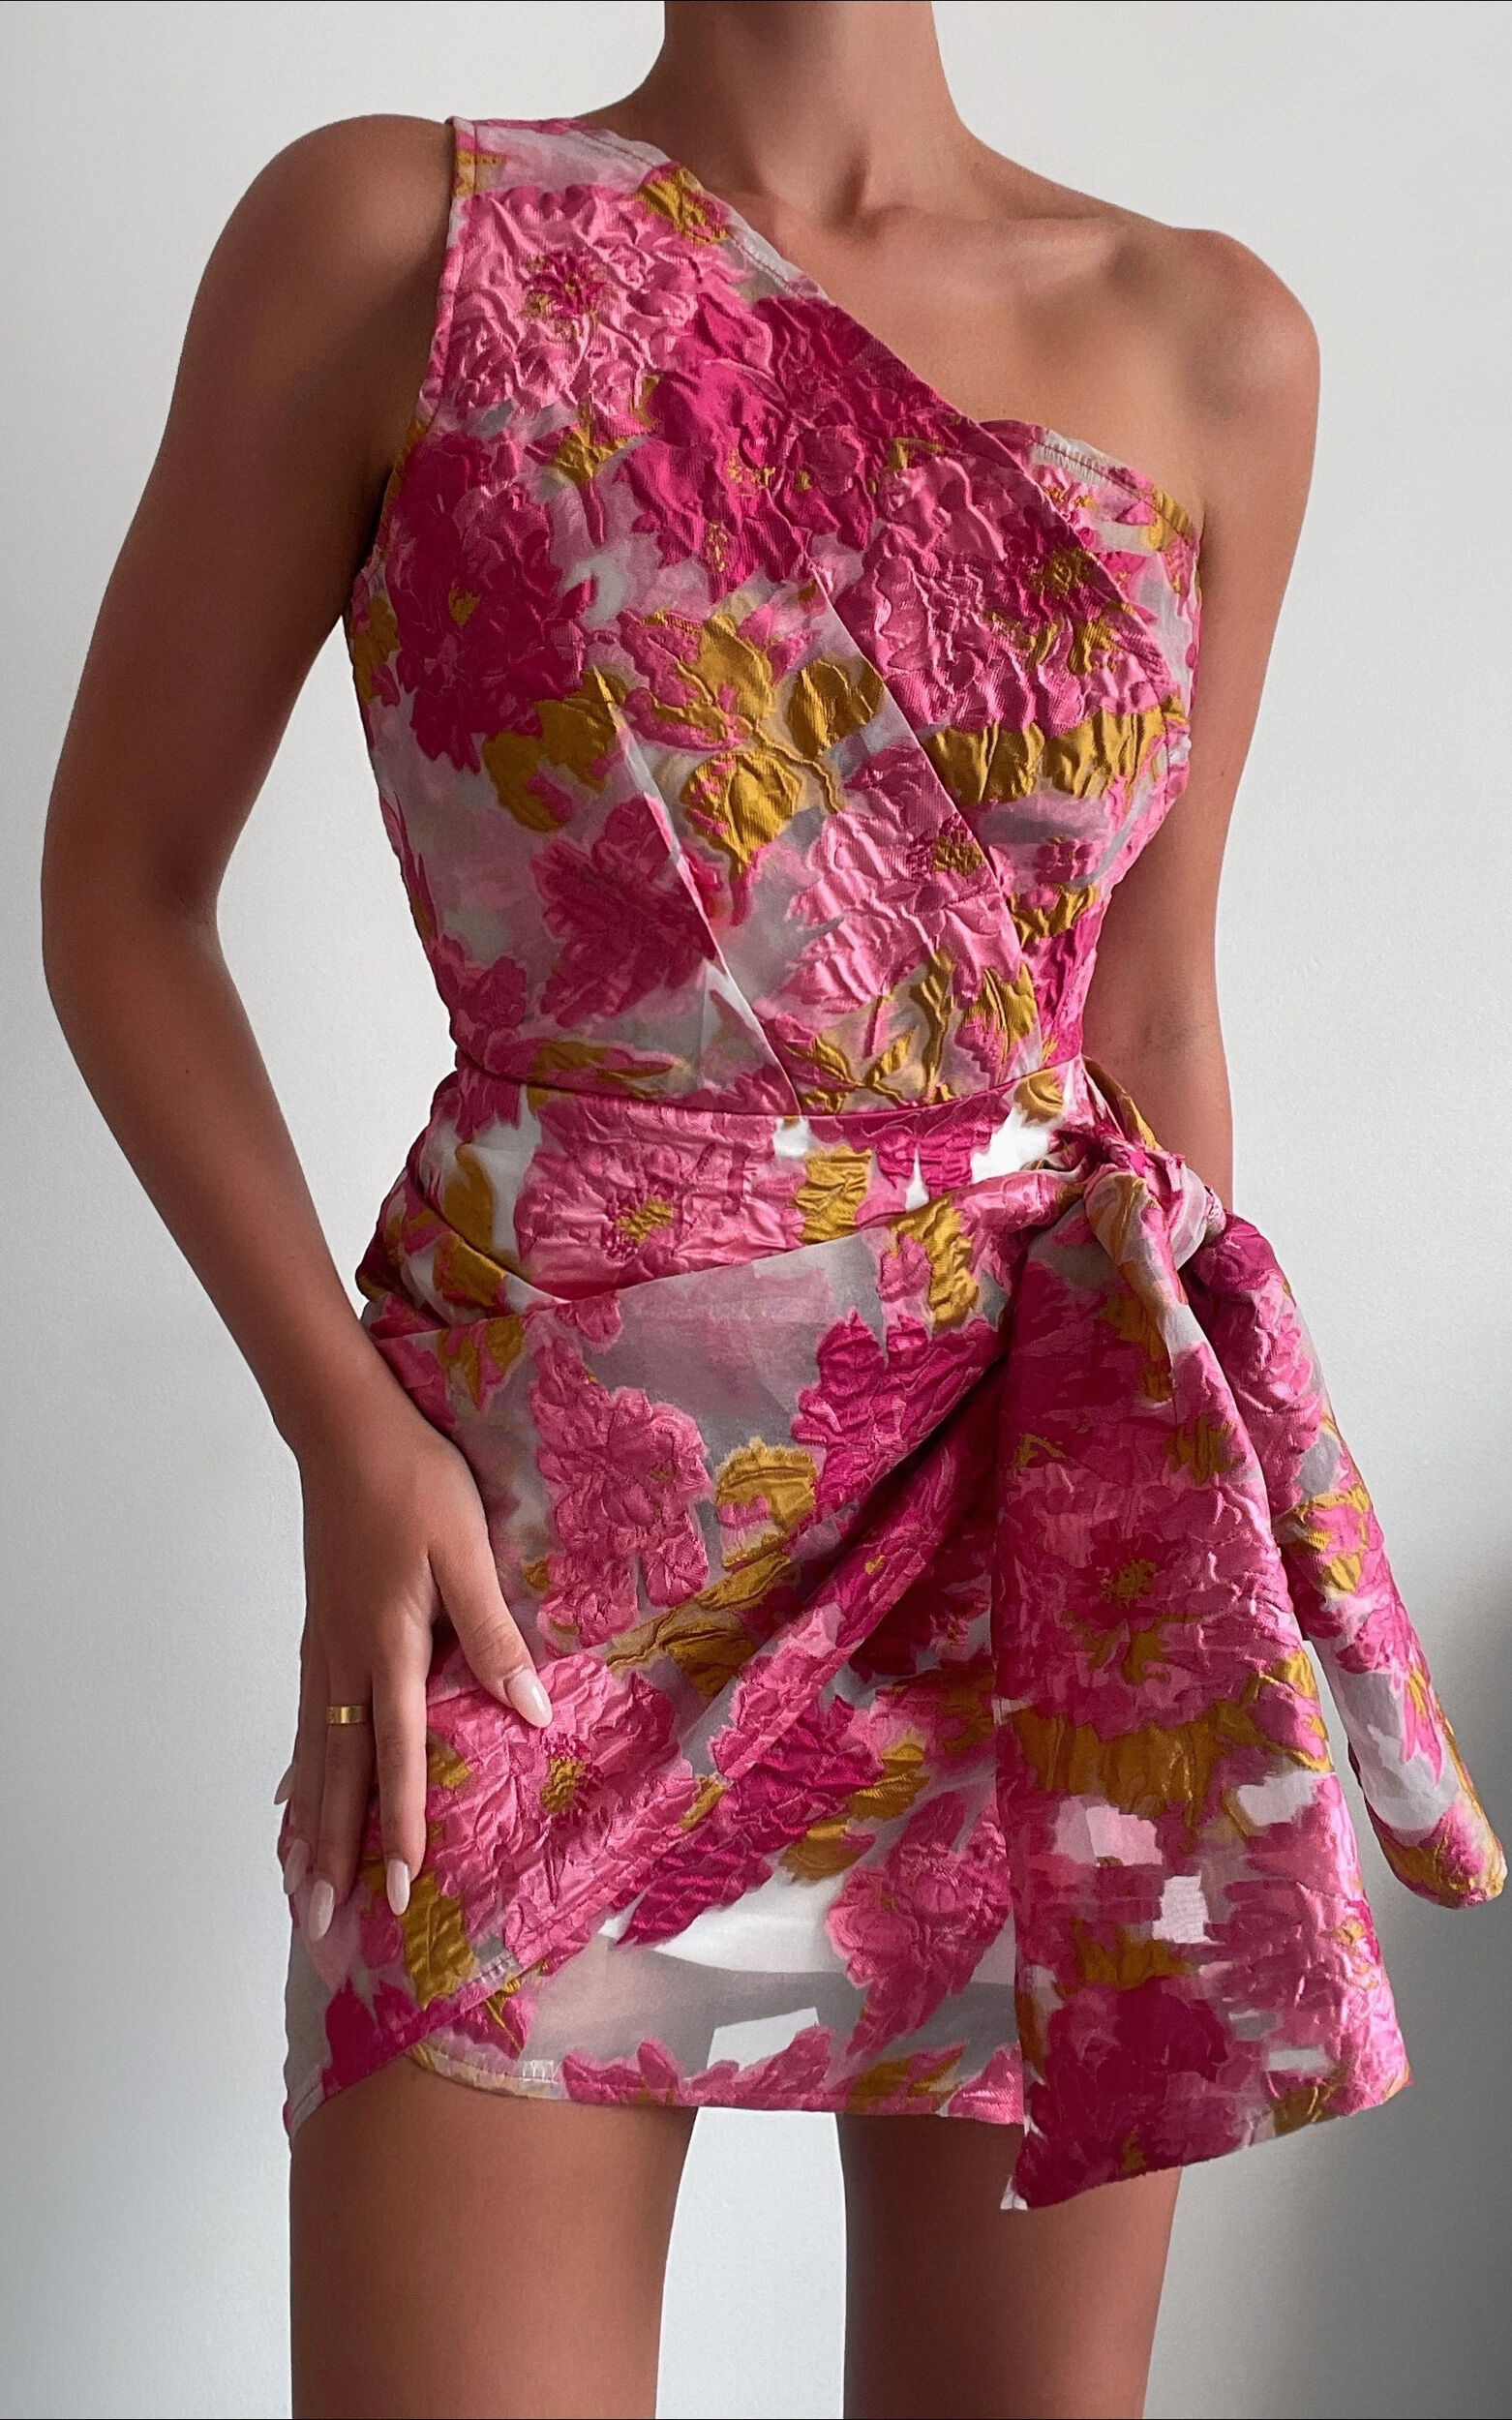 Hailey One Shoulder Mini Dress in Pink Floral - 06, PNK2, super-hi-res image number null